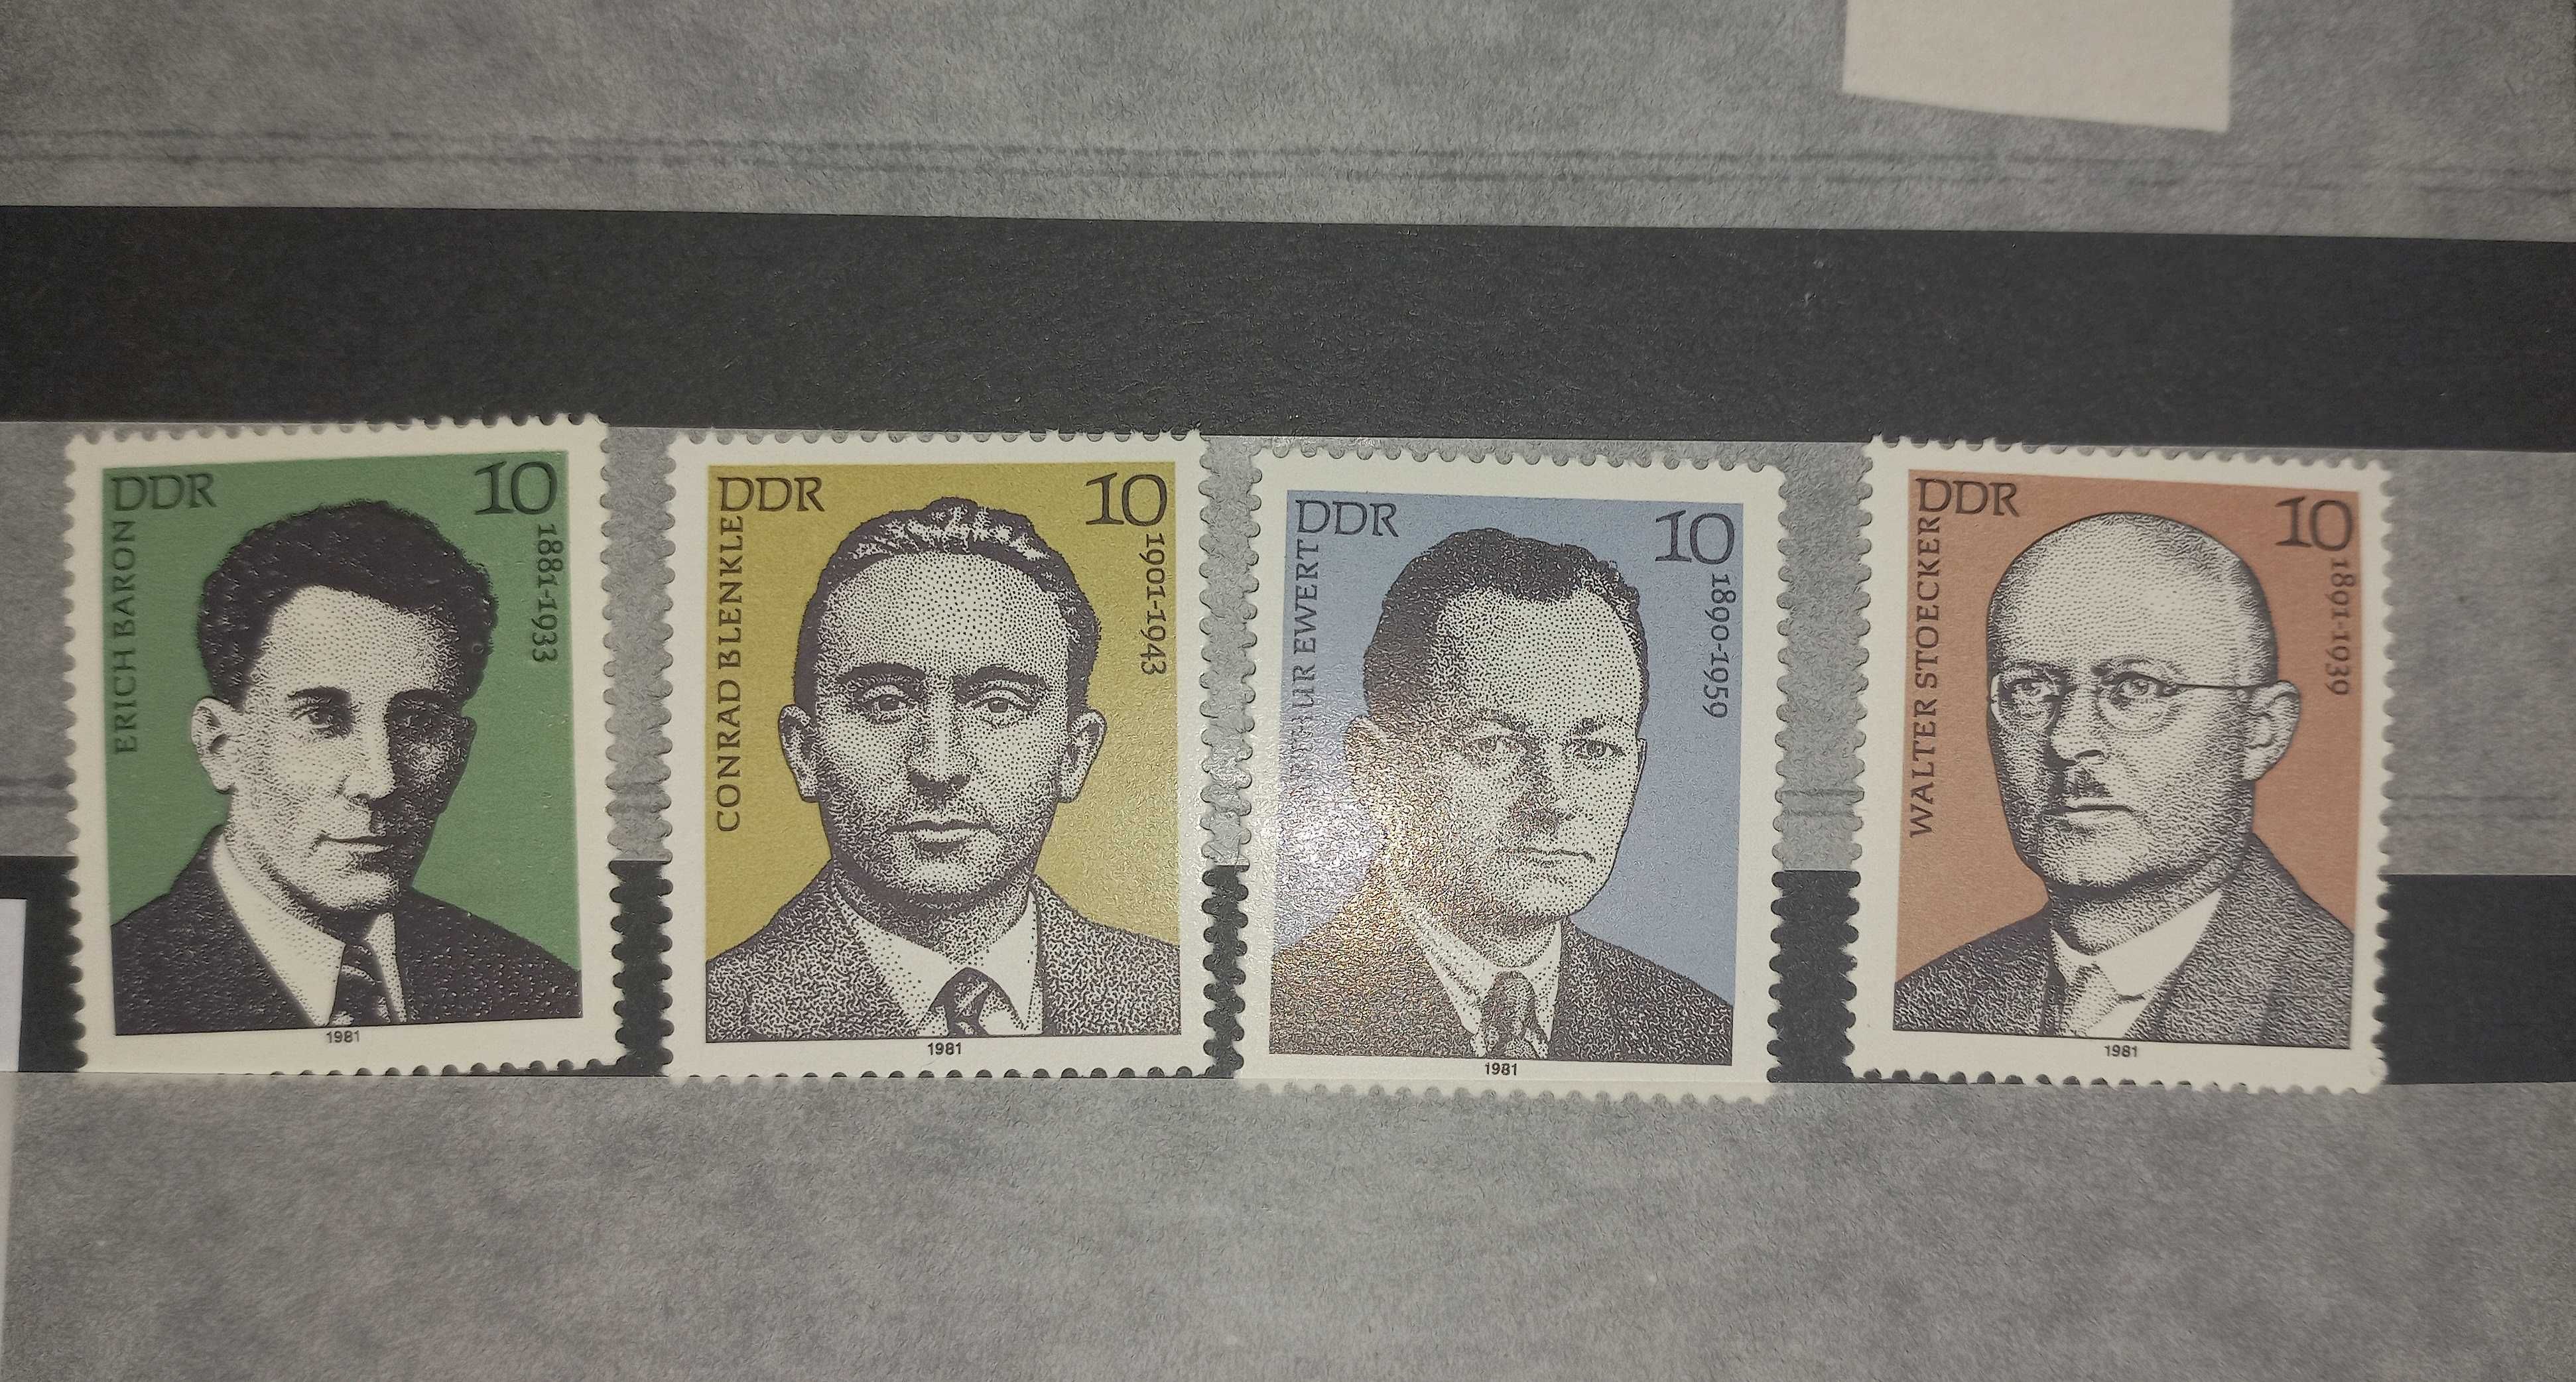 Zestaw znaczków - DDR - sławni ludzie